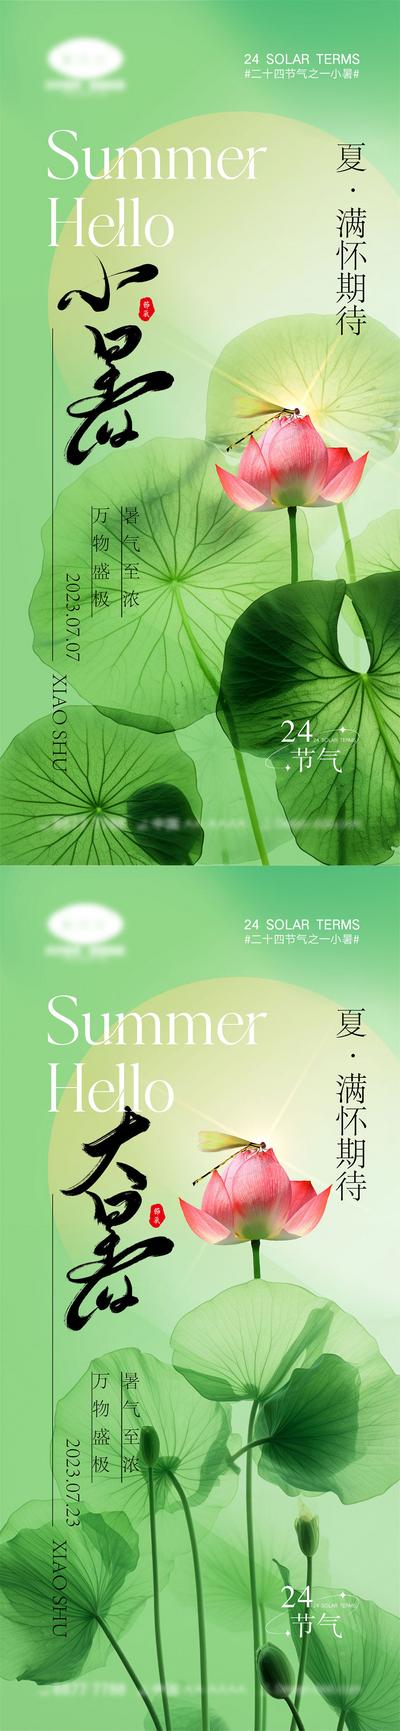 南门网 海报 系列 二十四节气 立夏 夏至 小暑 大暑 夏天 西瓜 阳光 初夏 昆虫 荷花 初伏 中伏